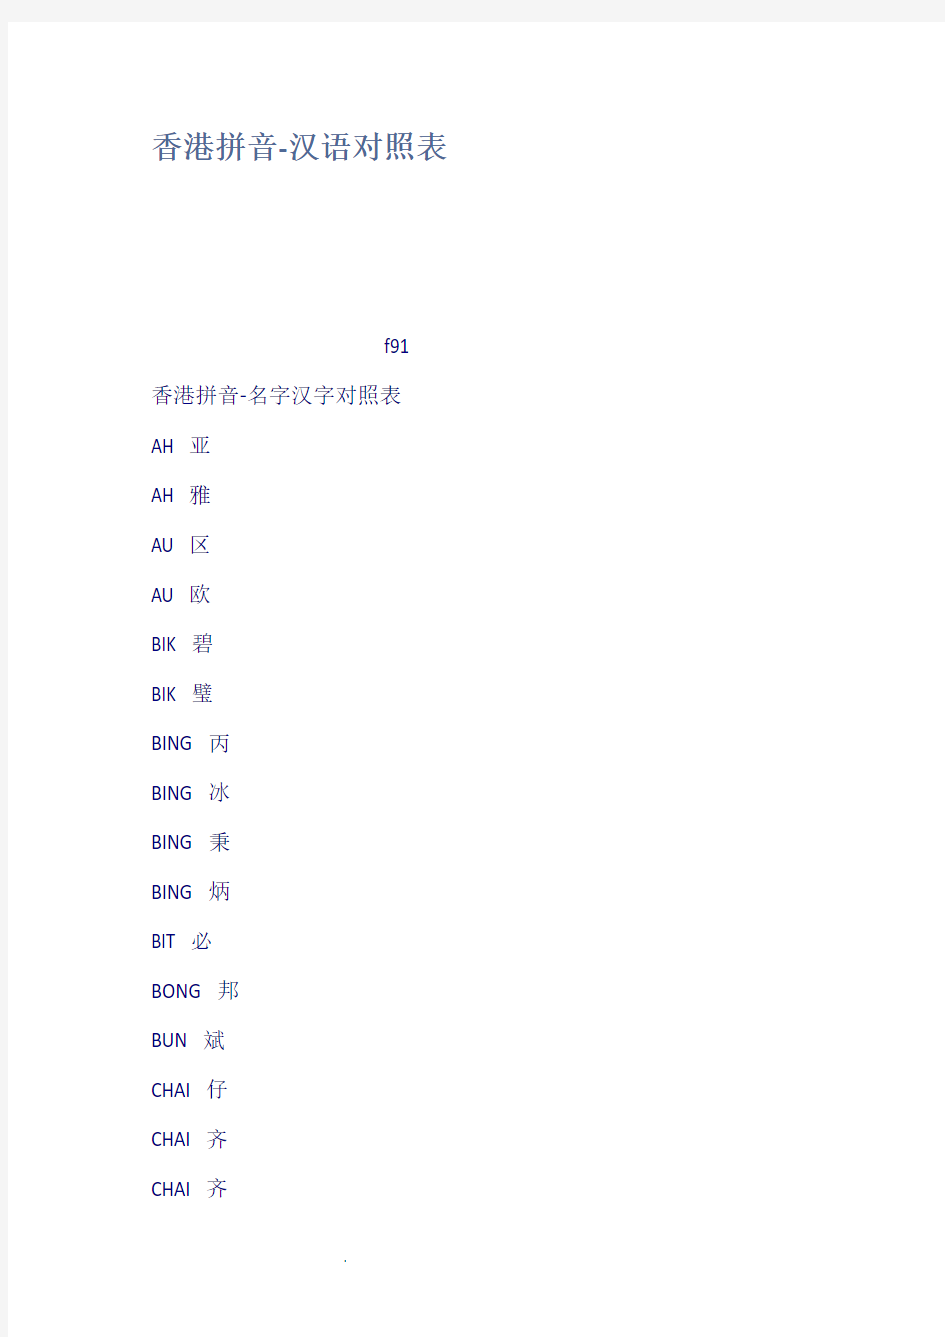 香港拼音汉语对照表